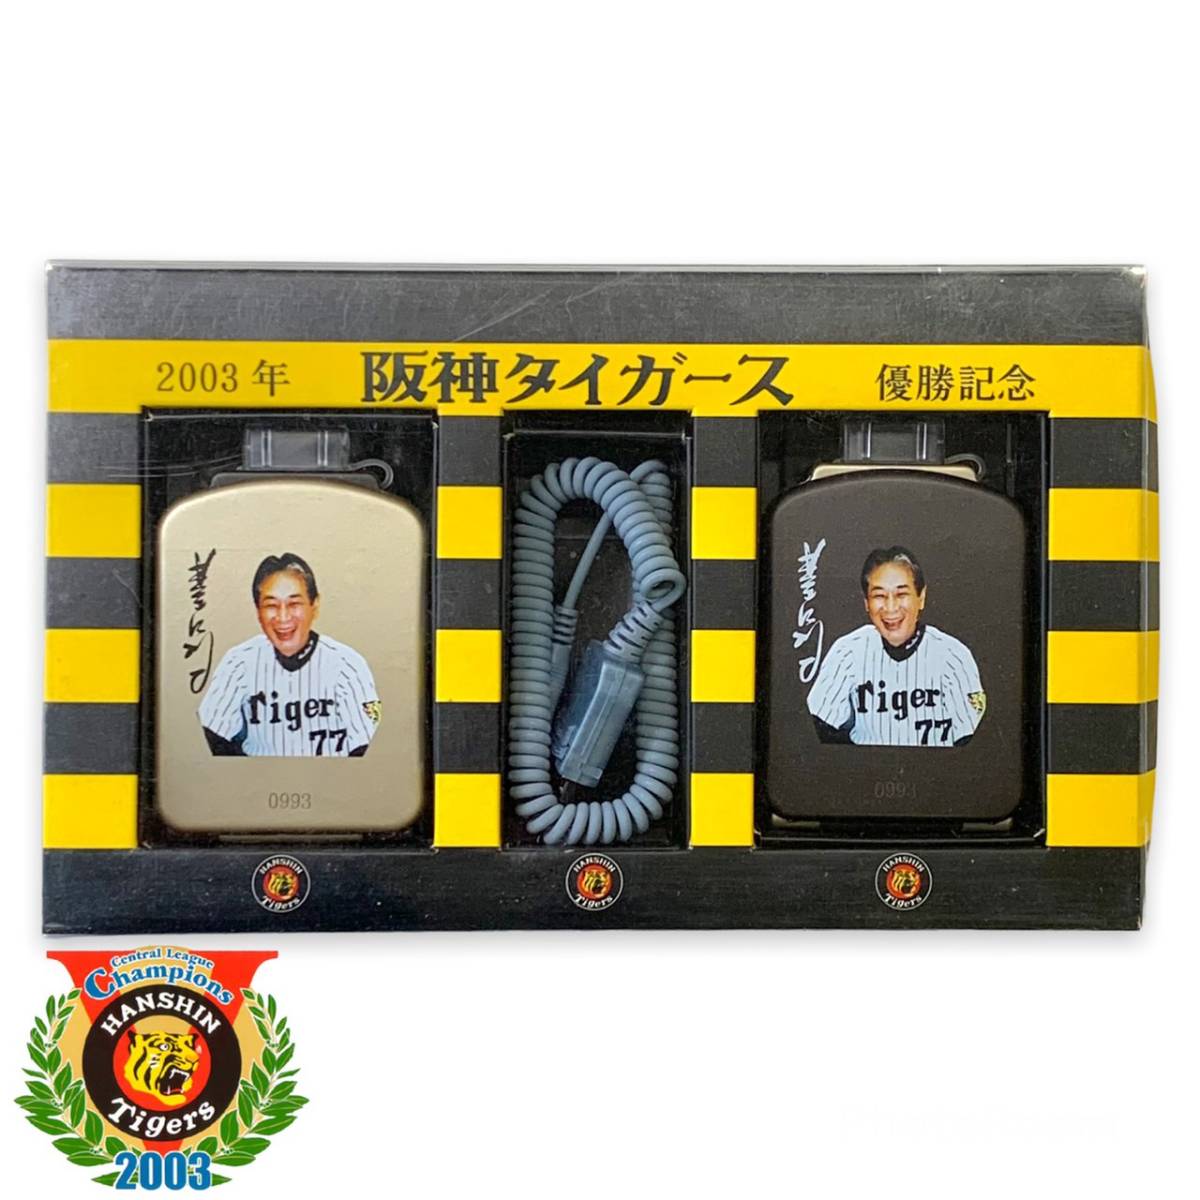 阪神タイガース 2003年 優勝記念 モバイルバッテリー ソーラー ガラケー端子 未使用 美品 非売品 レア 野球グッズ_画像1